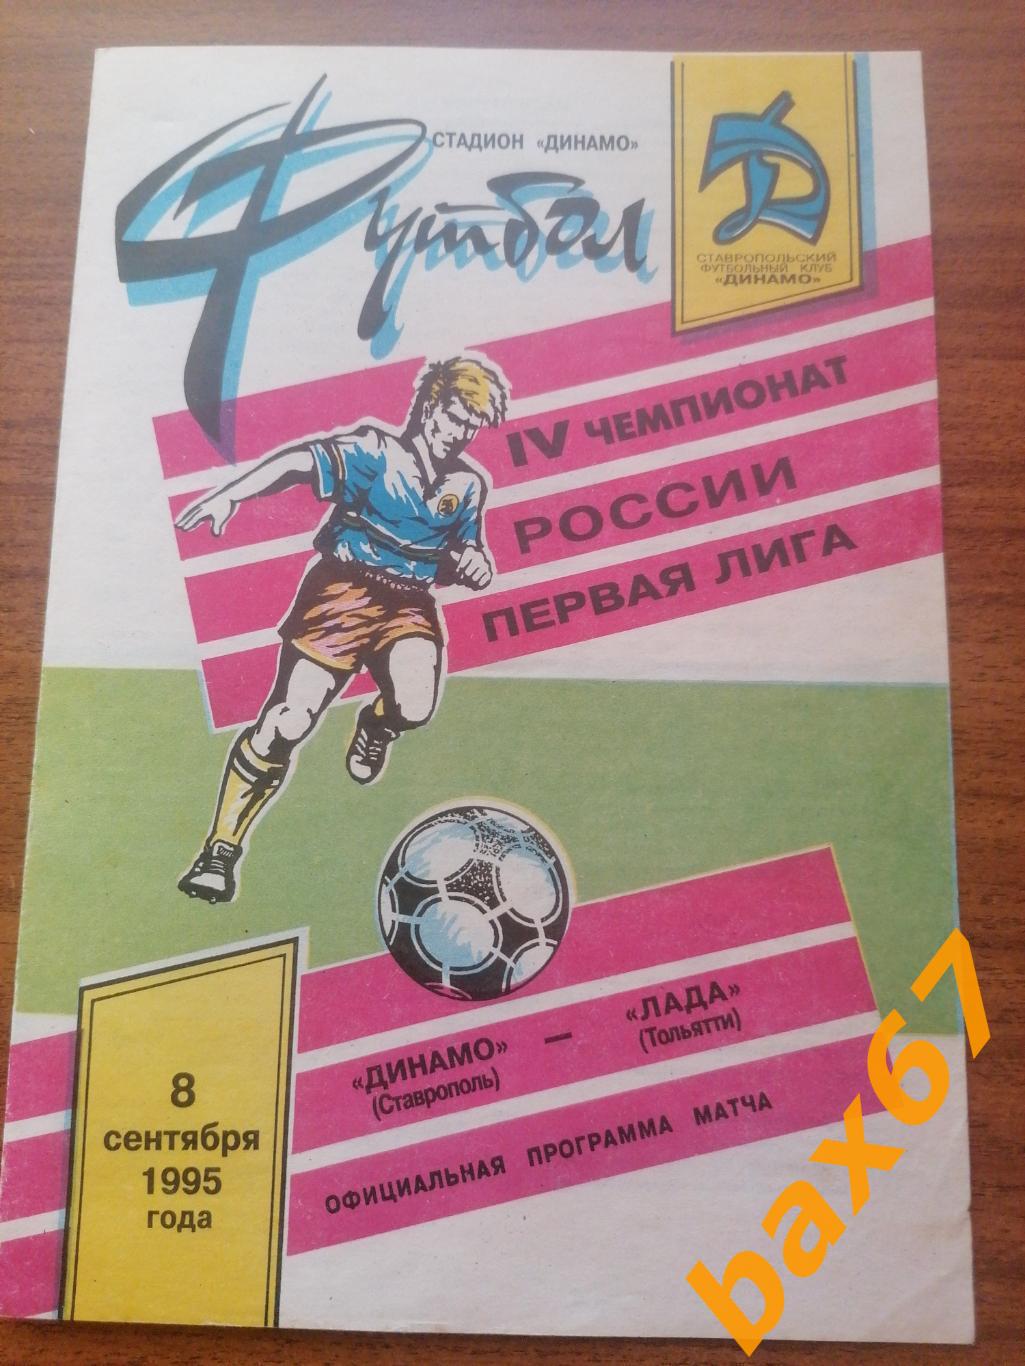 Динамо Ставрополь - Лада Тольятти 08.09.1995